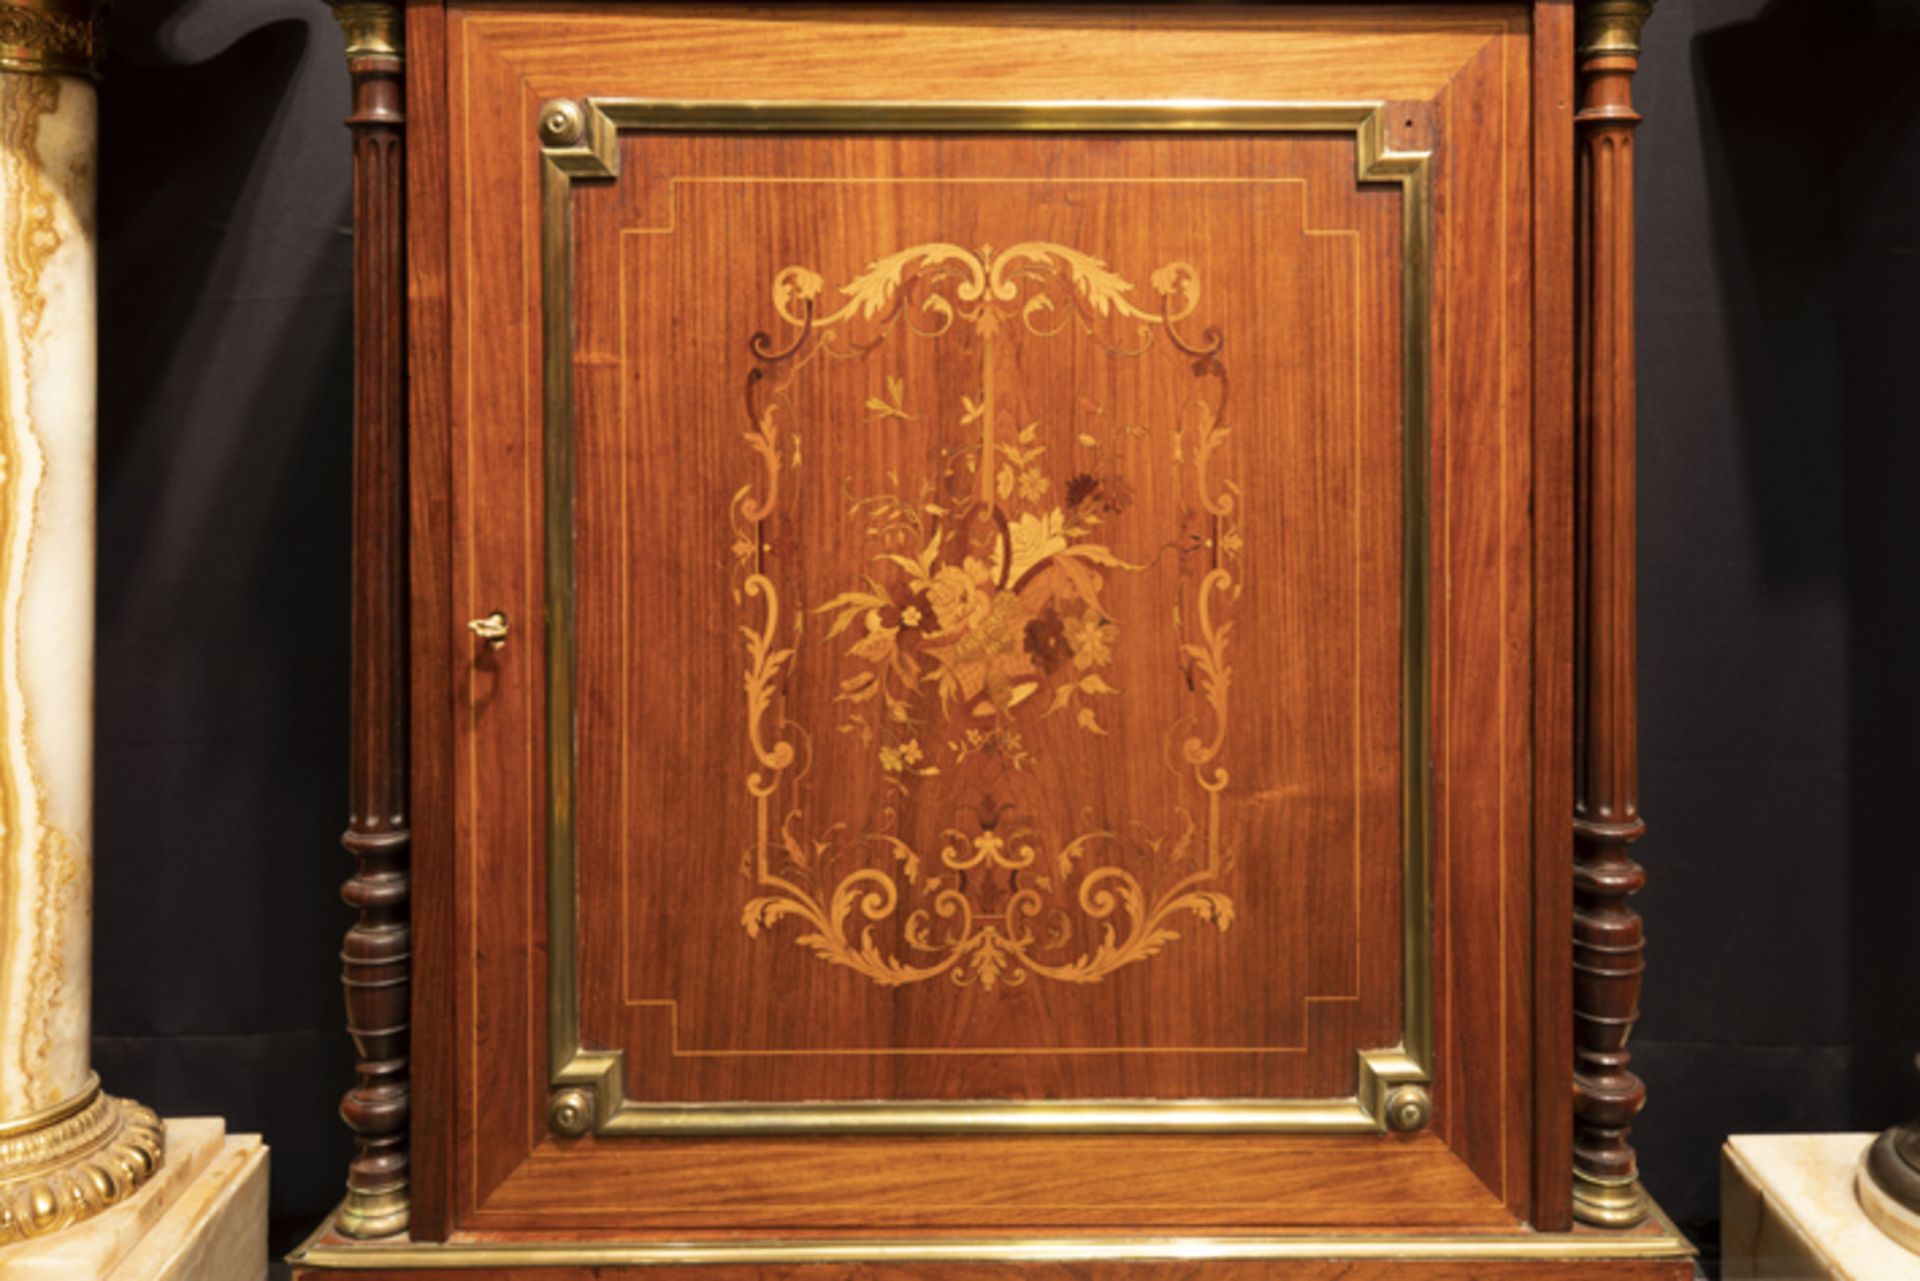 FRANKRIJK - 19° EEUW neoclassicistisch meubel in marqueterie versierd met koper- en [...] - Image 3 of 3